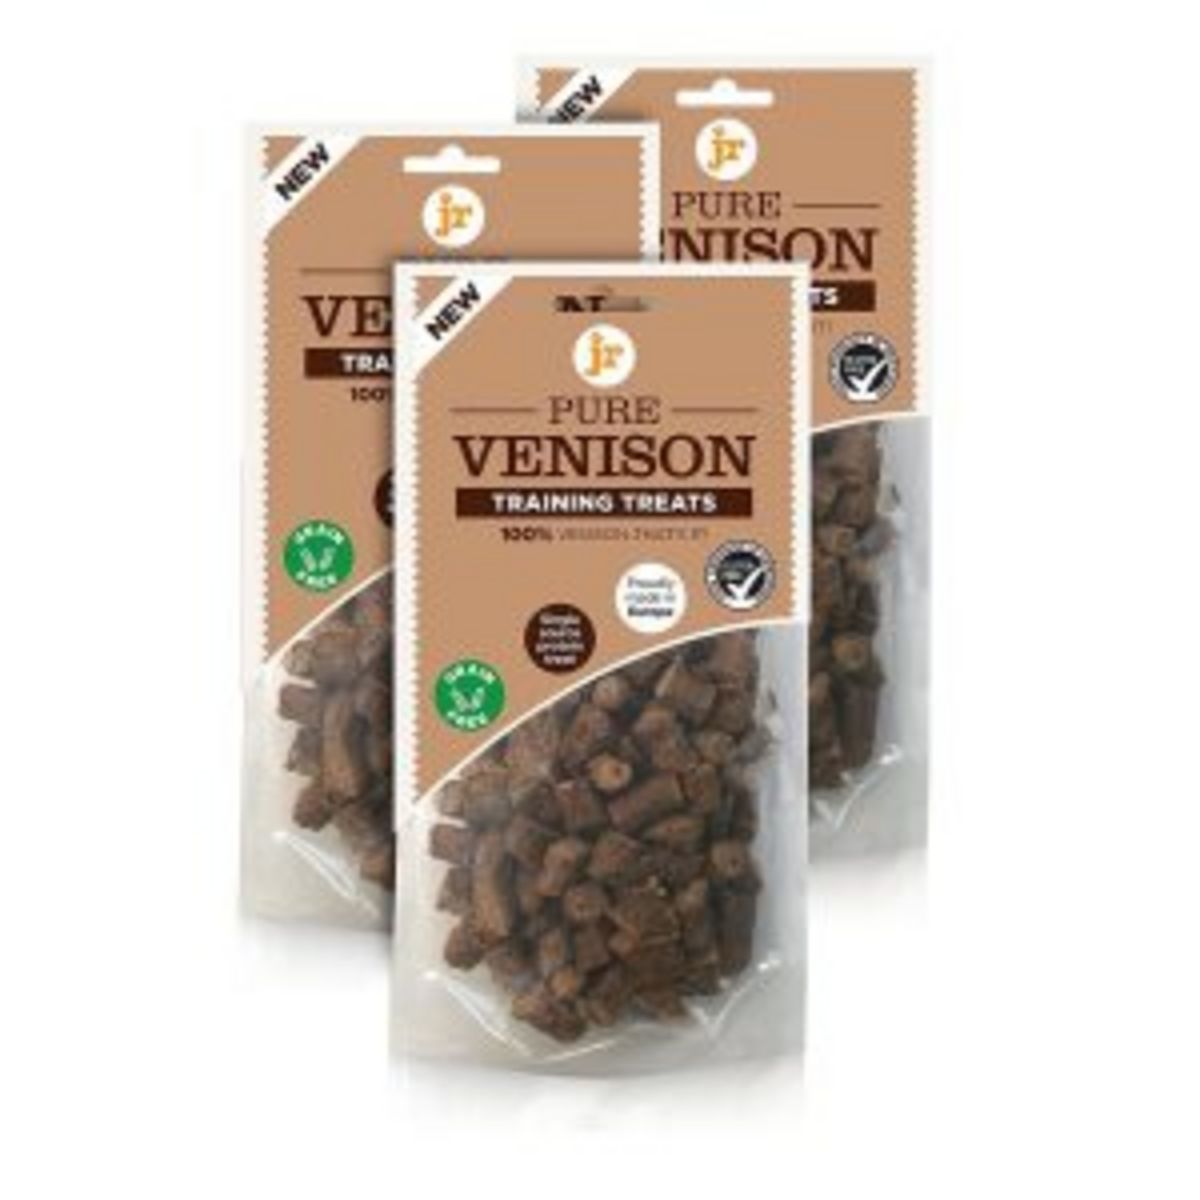 JR Pet Products - Pure Venison Training Treats - 85g